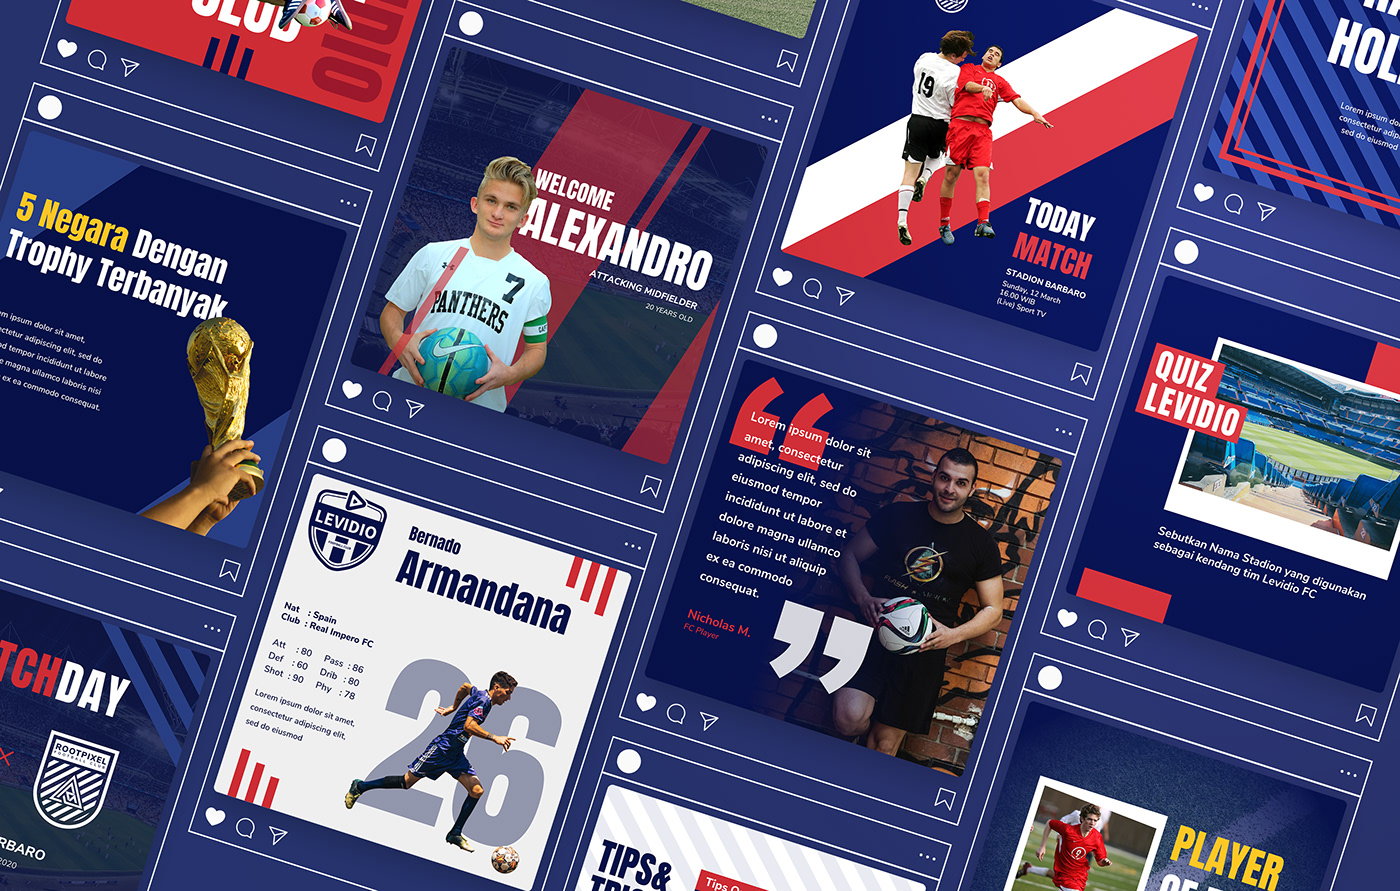 Instagram Post soccer Soccer Design Soccer Kit social media Social Media Design Social media post